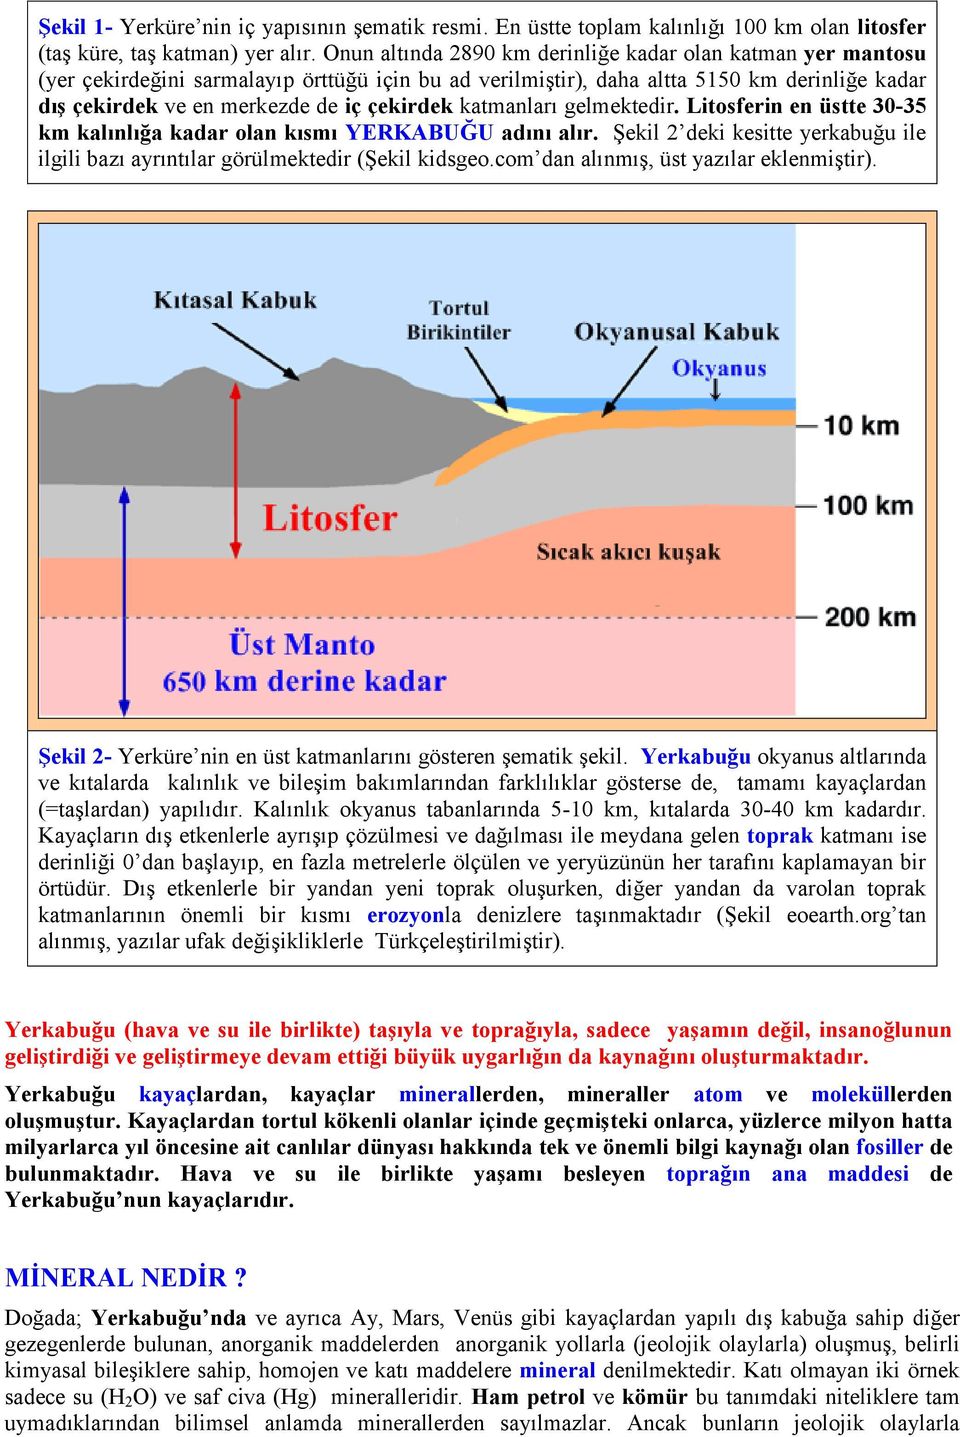 katmanları gelmektedir. Litosferin en üstte 30-35 km kalınlığa kadar olan kısmı YERKABUĞU adını alır. Şekil 2 deki kesitte yerkabuğu ile ilgili bazı ayrıntılar görülmektedir (Şekil kidsgeo.